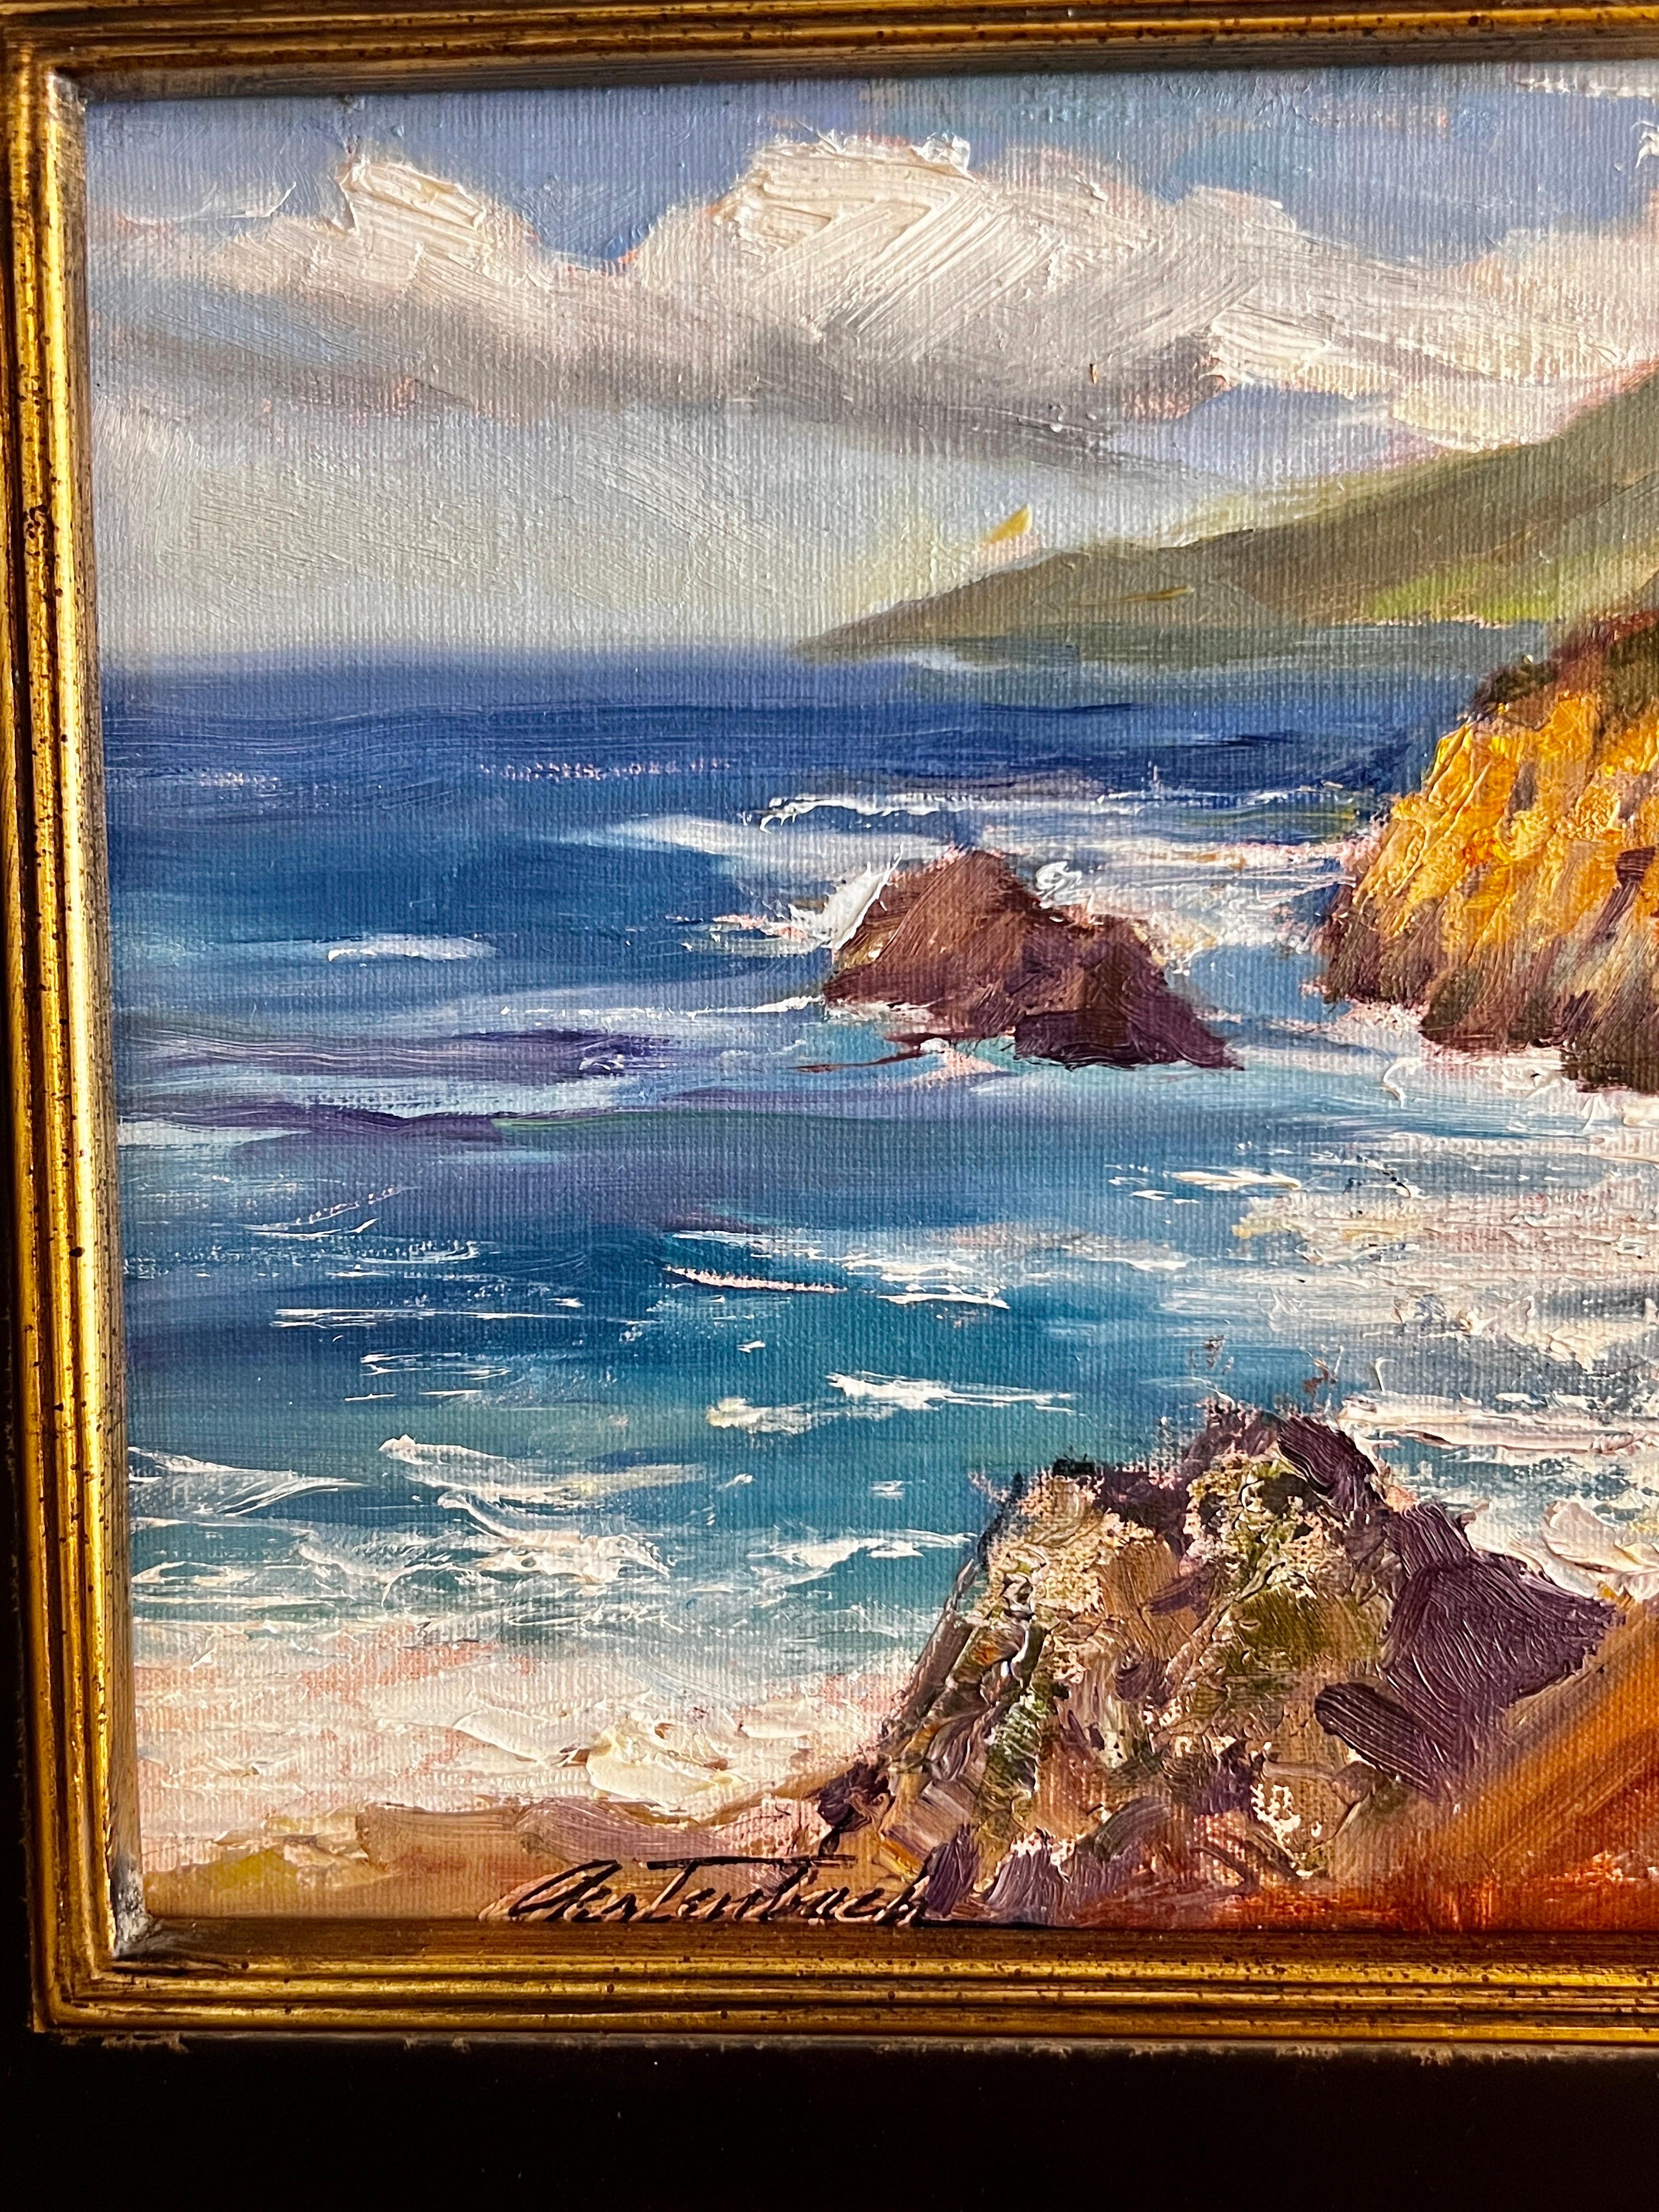 Big Sur California - Impressionist Painting by Lynn Gertenbach